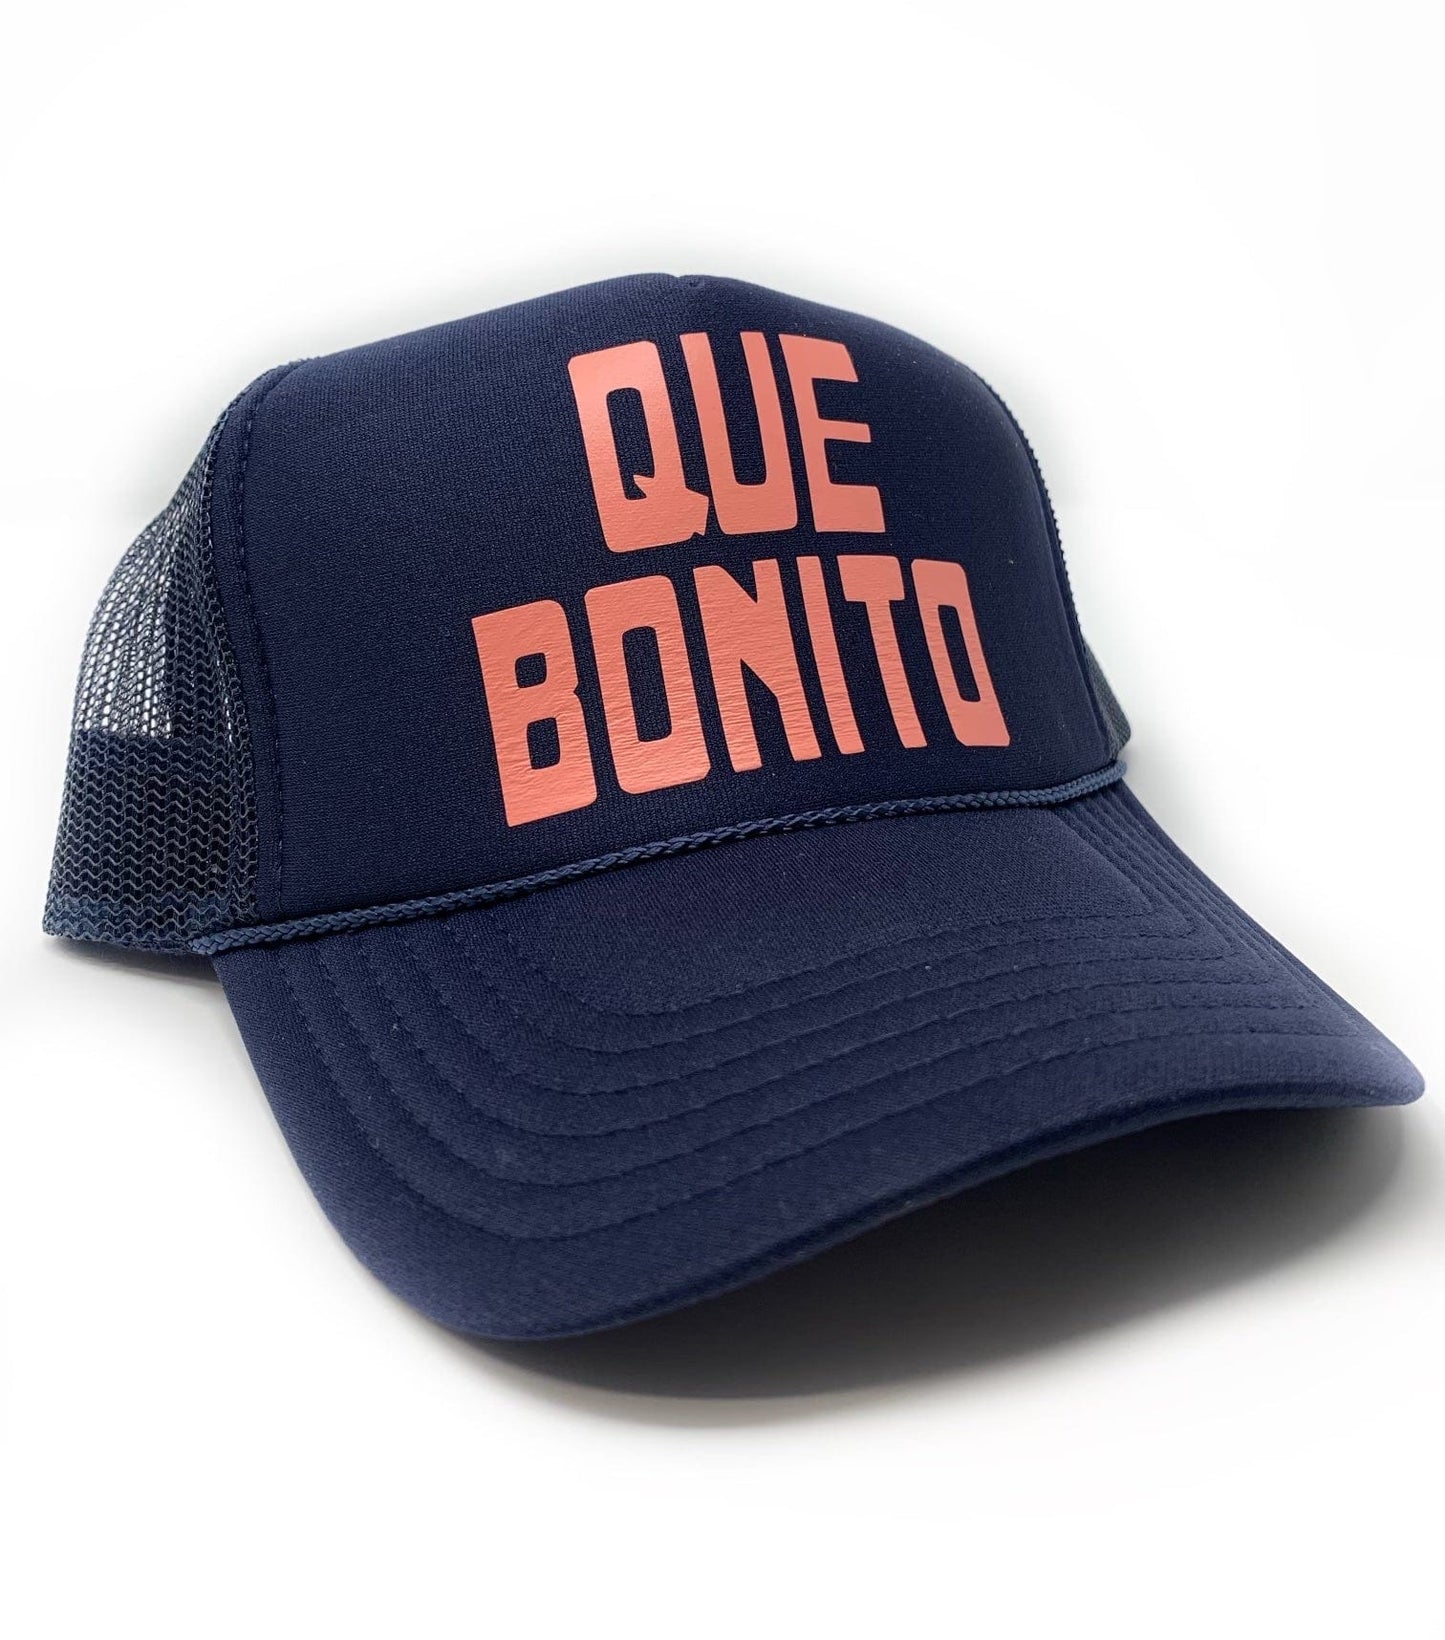 QUE BONITO HAT